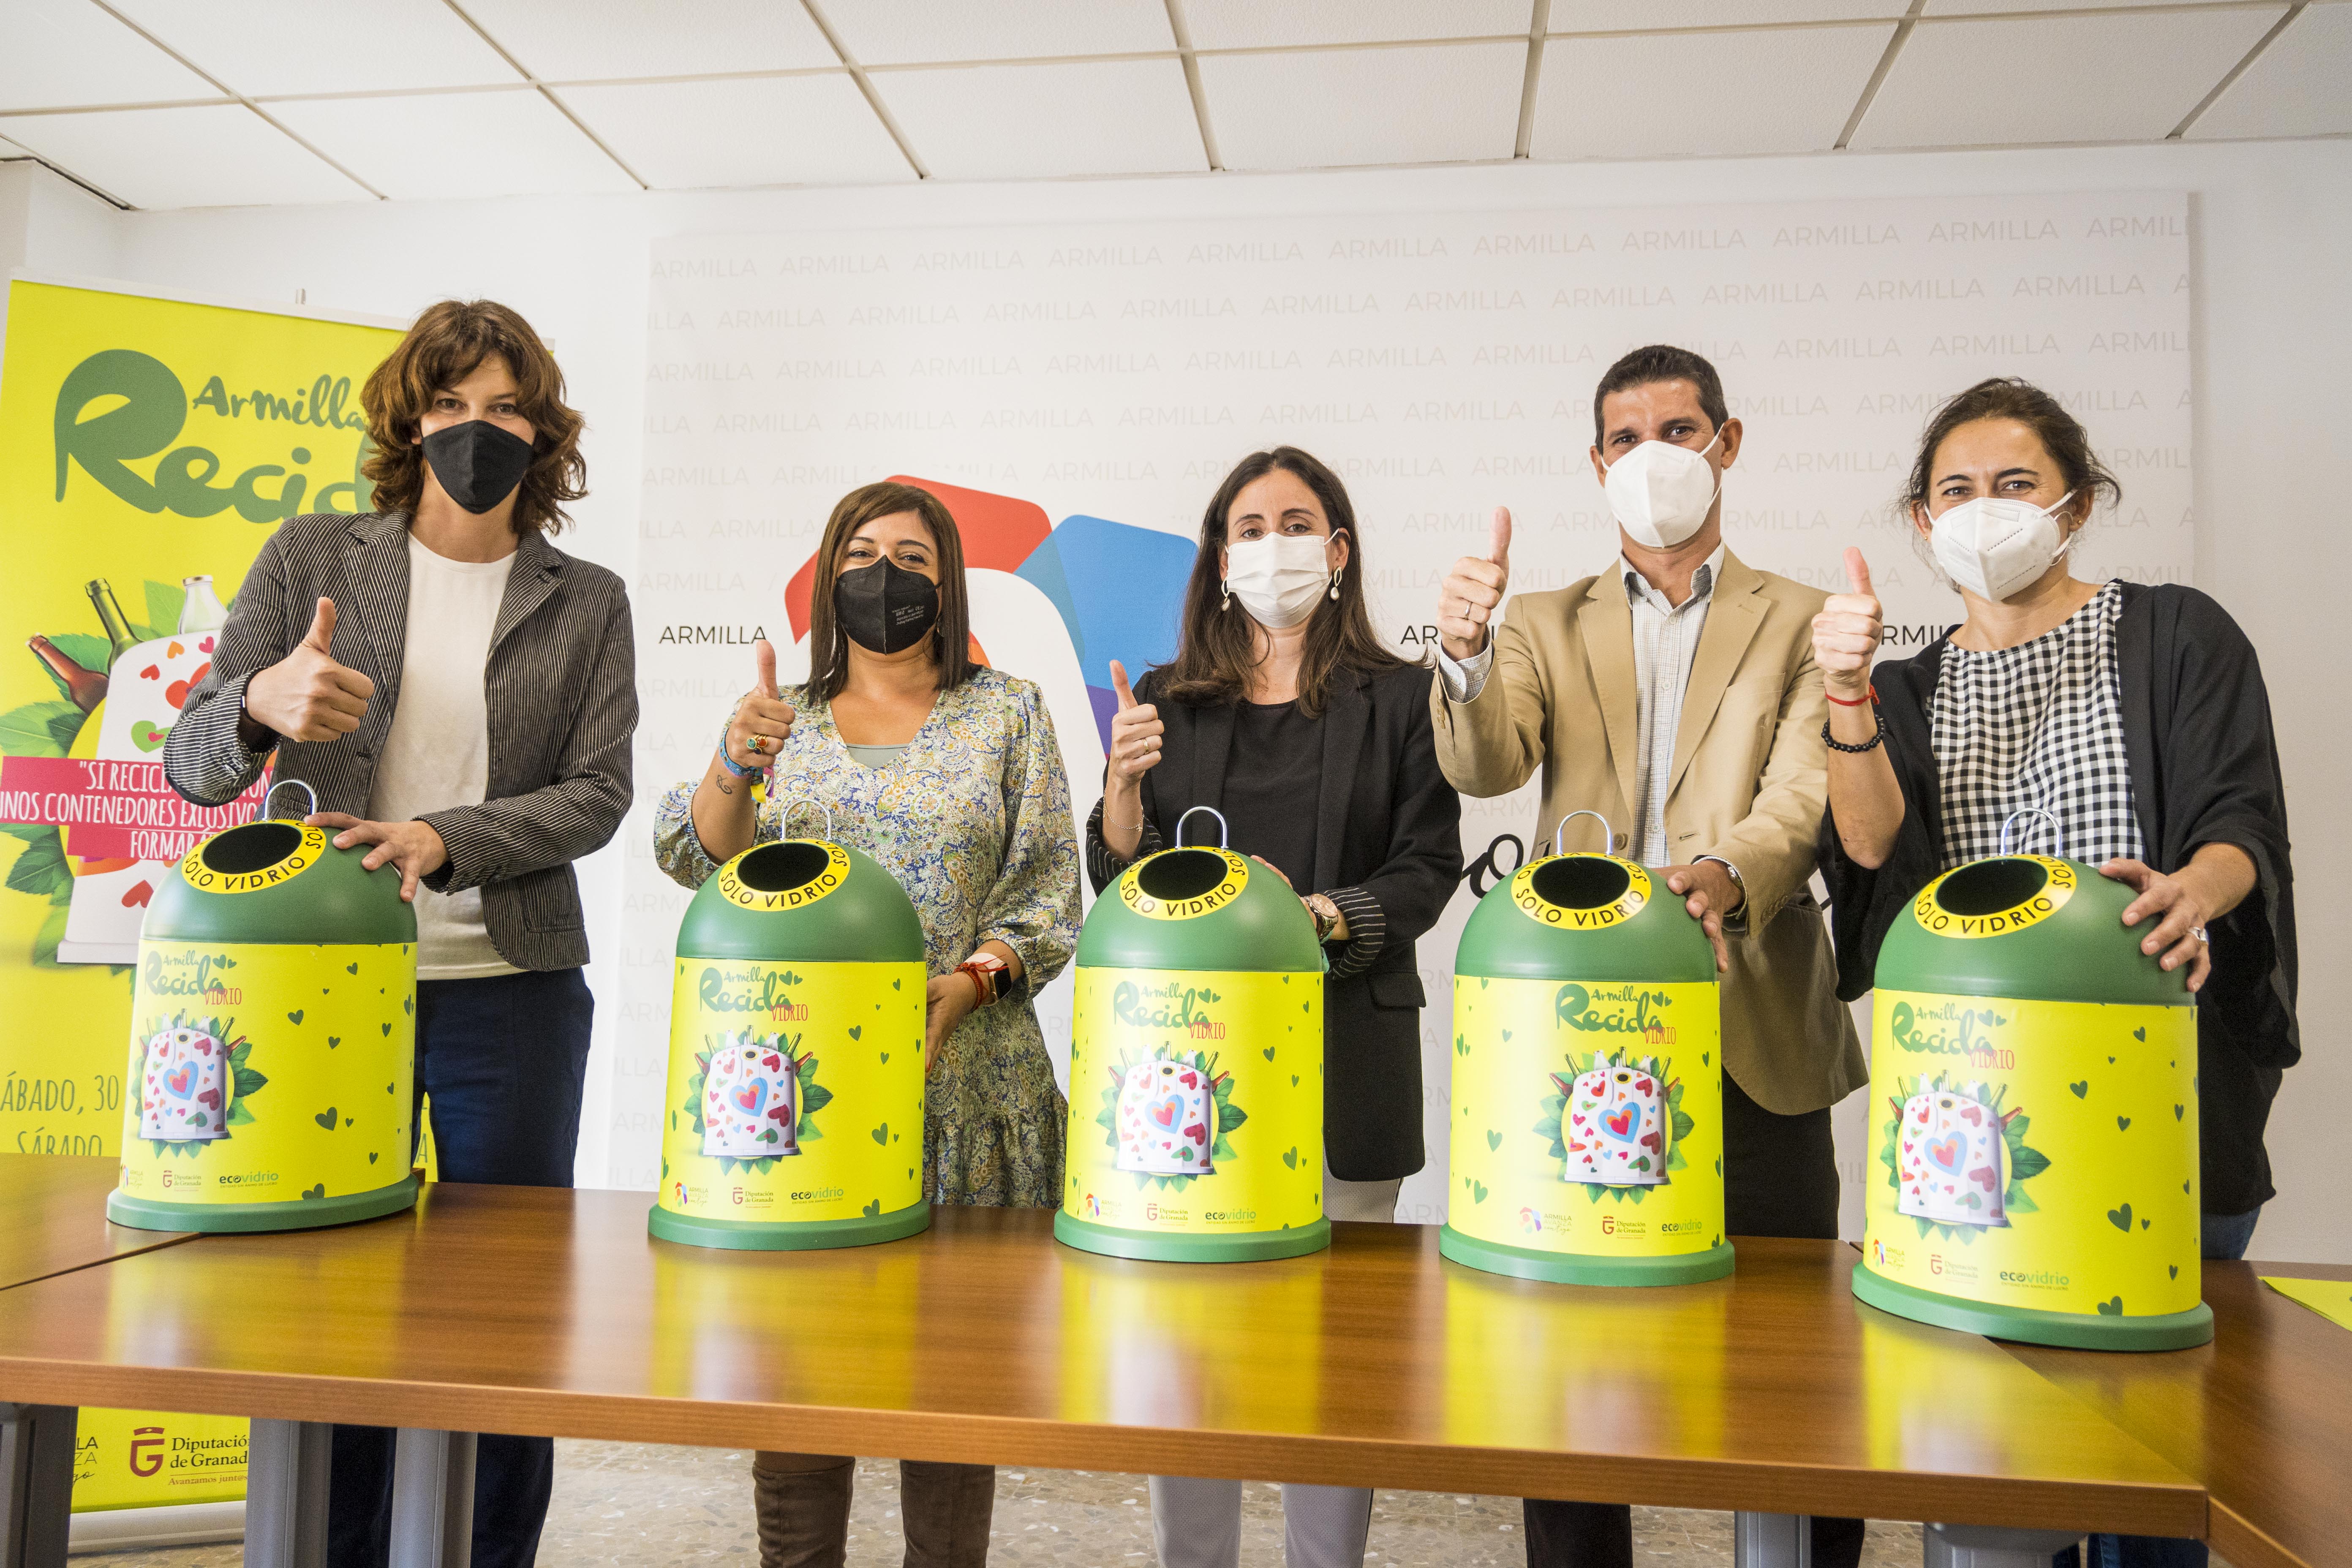 Ecovidrio, Diputación y el Ayuntamiento de Armilla promueven el reciclaje de envases de vidrio a través de una campaña